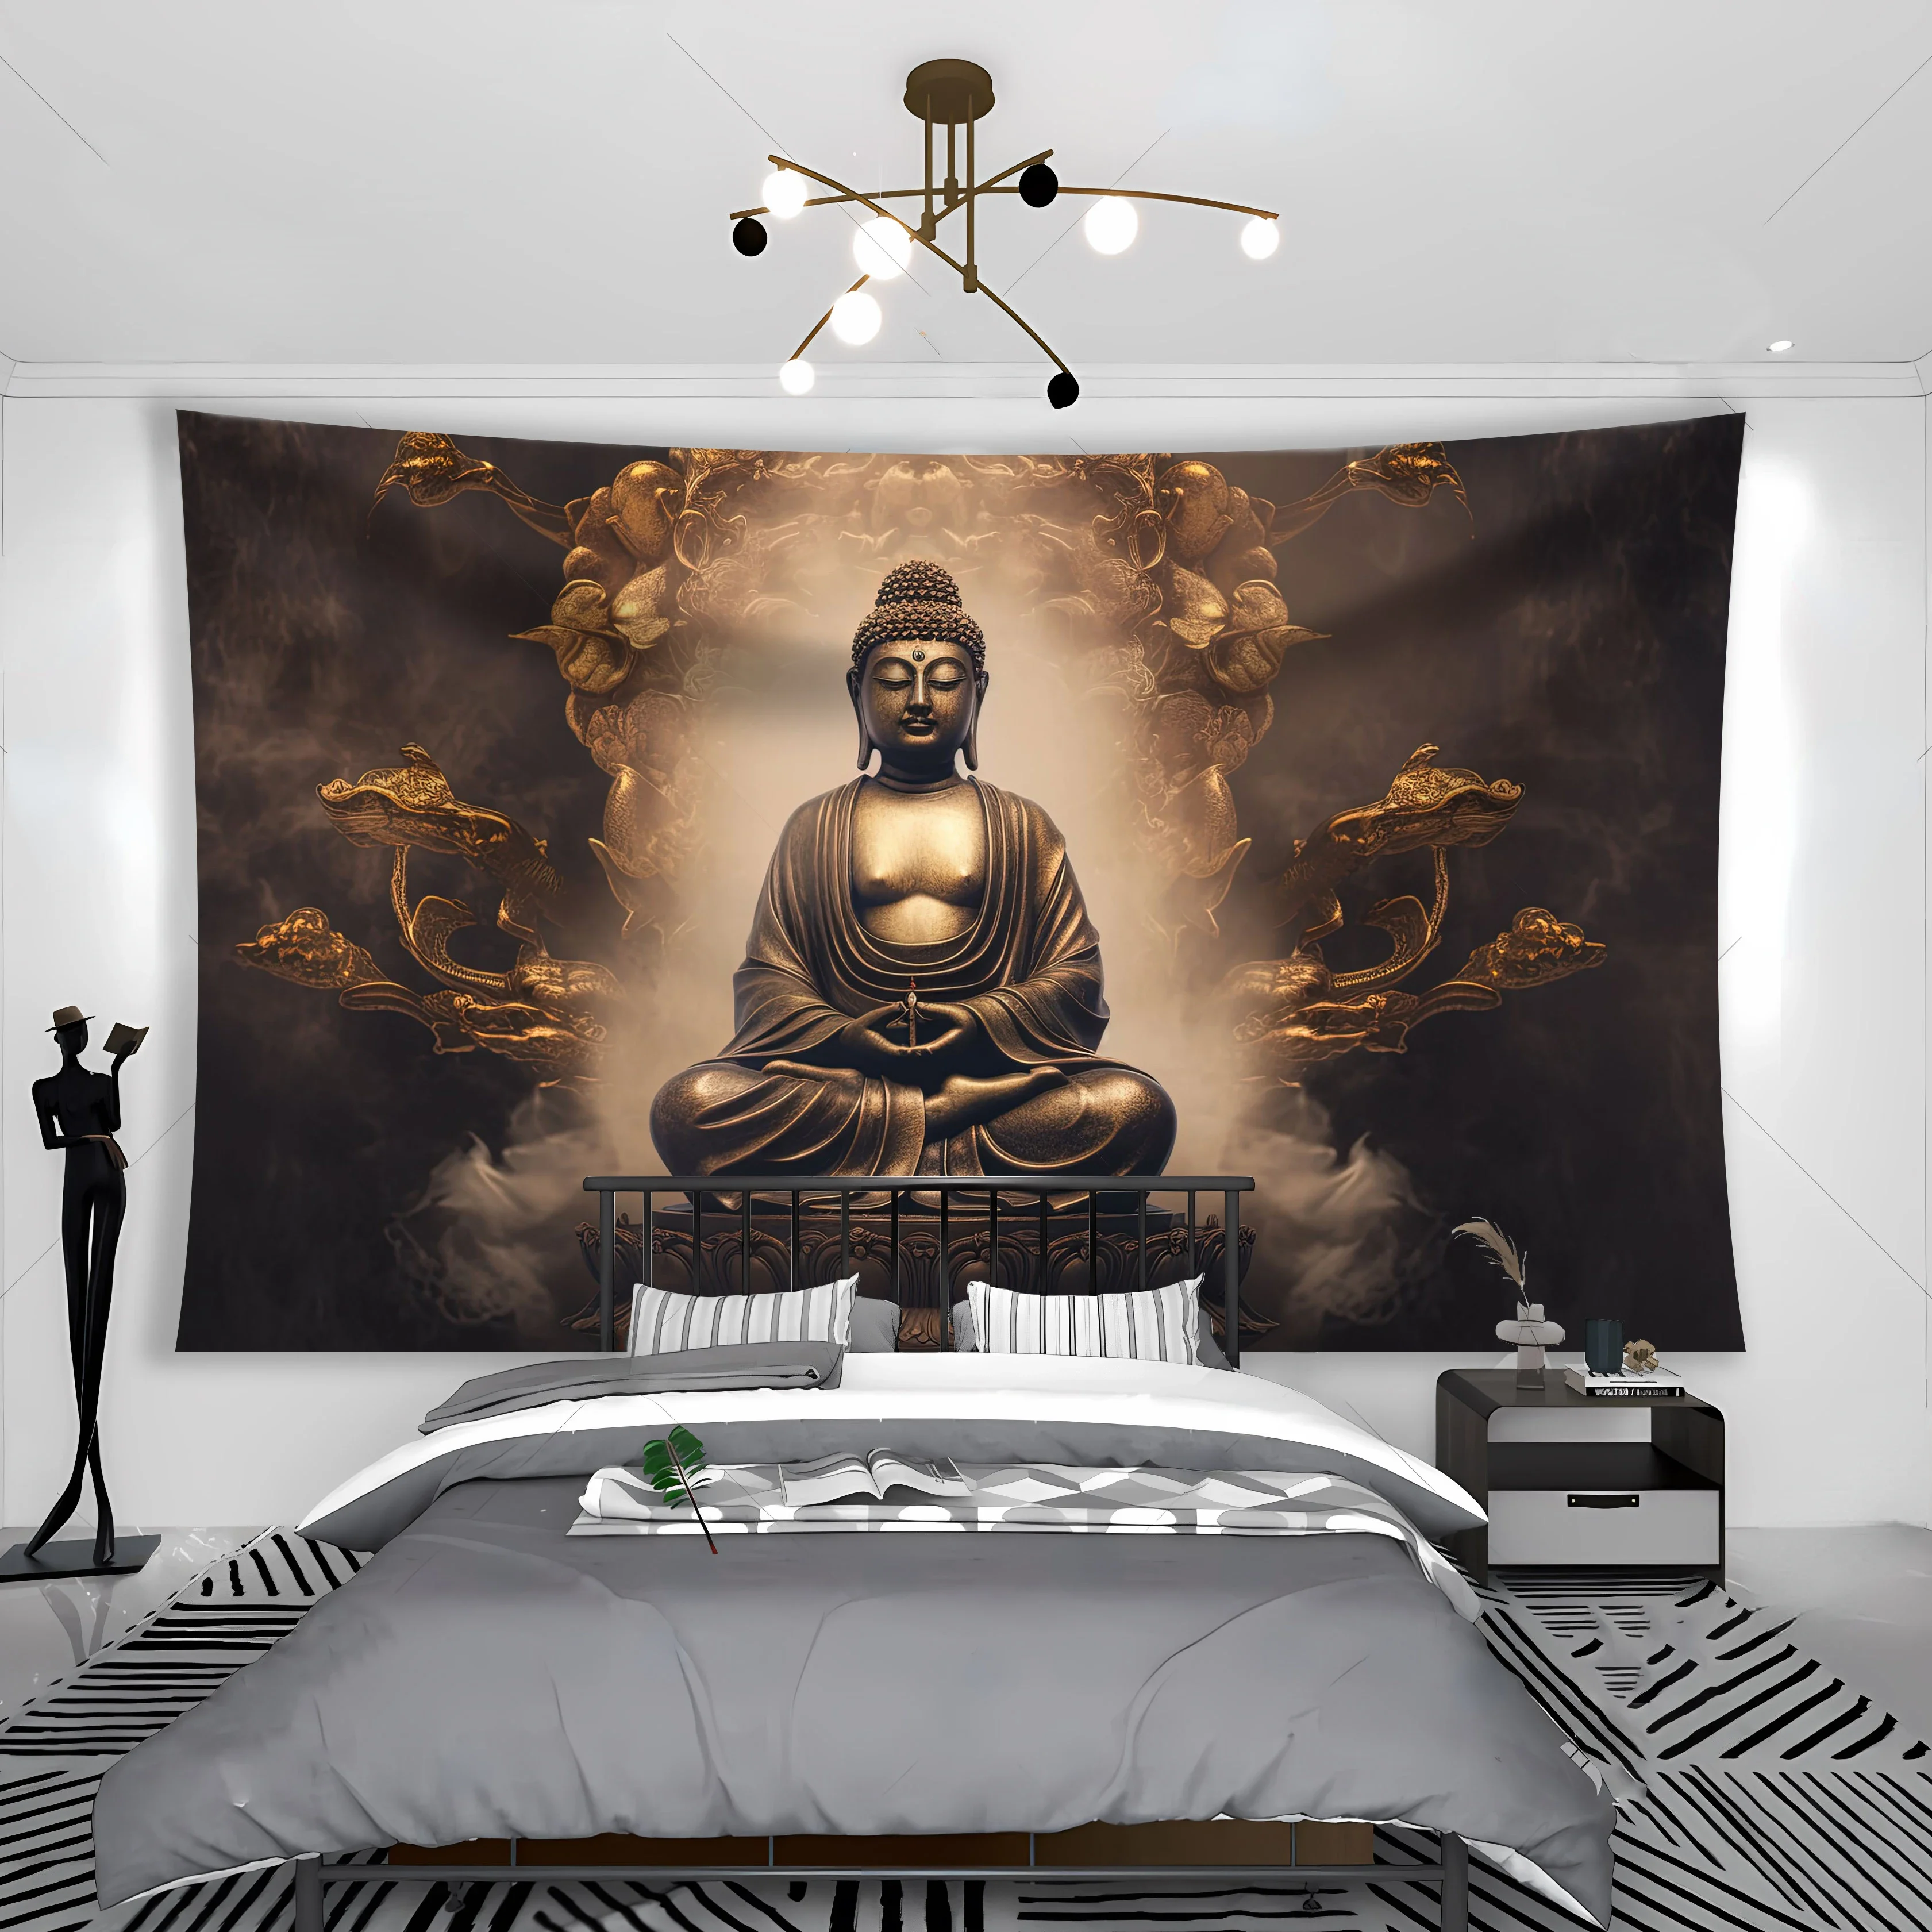 

3d гобелены, настенные ковры Будды, спальни, психоделические деревья хиппи, богемные украшения